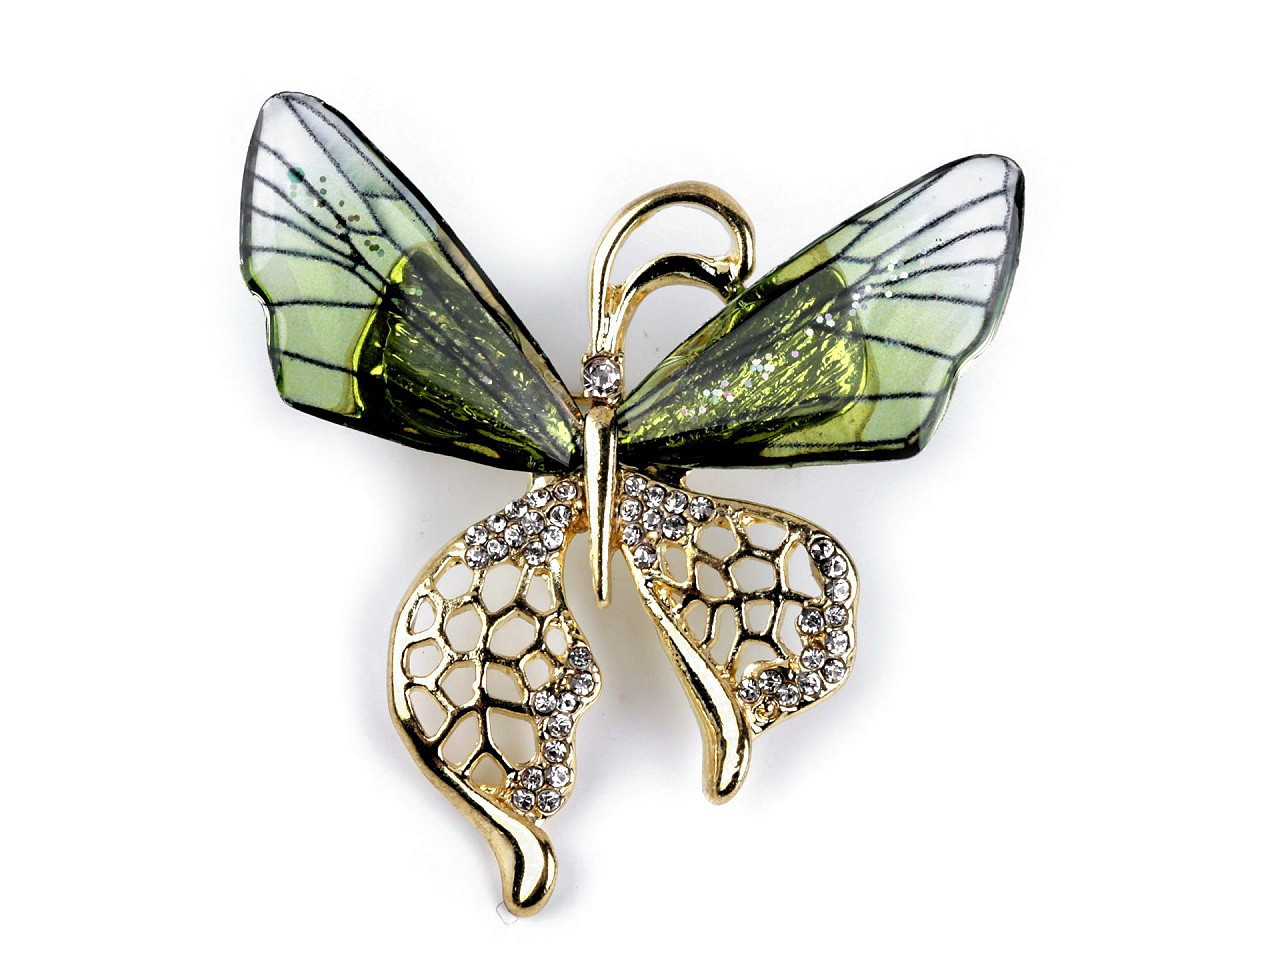 Brož s broušenými kamínky, barva 6 zelená sv. motýl